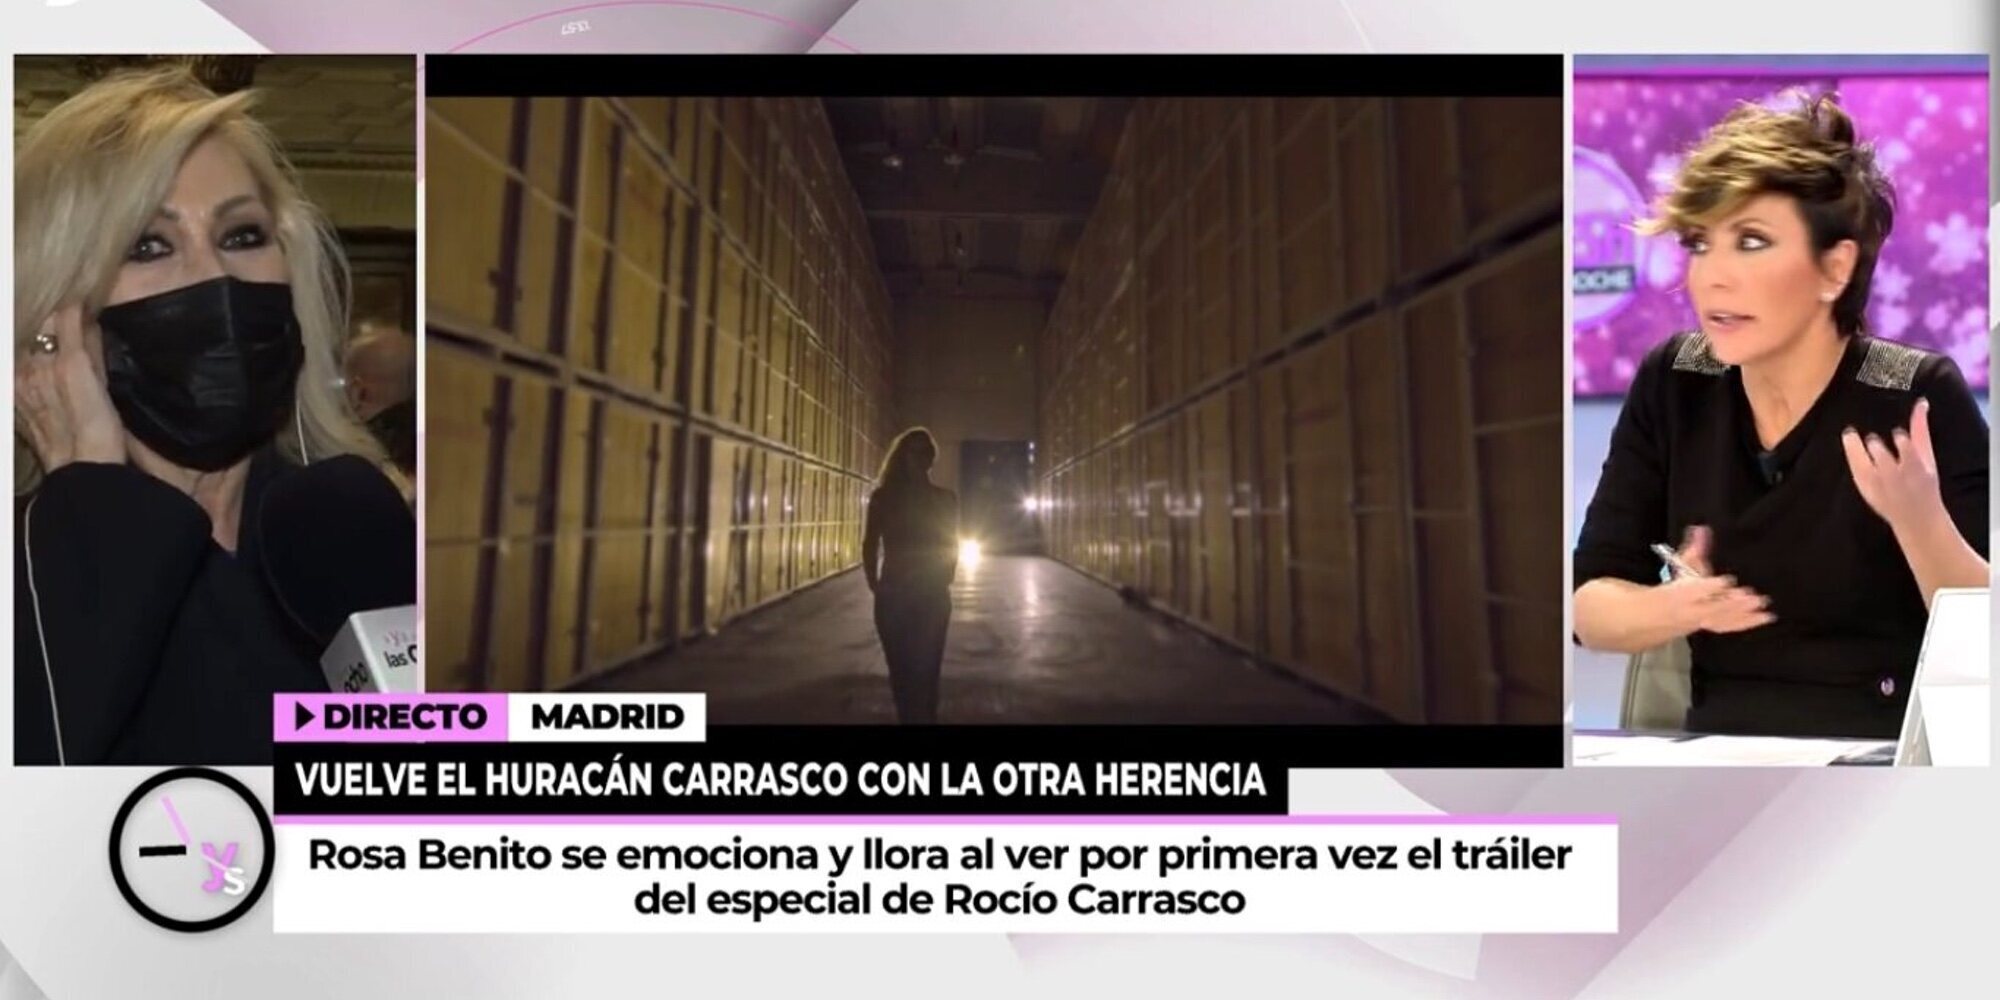 Rosa Benito tras el tráiler de 'El último viaje de Rocío': "No creo que haya ningún documento comprometido"